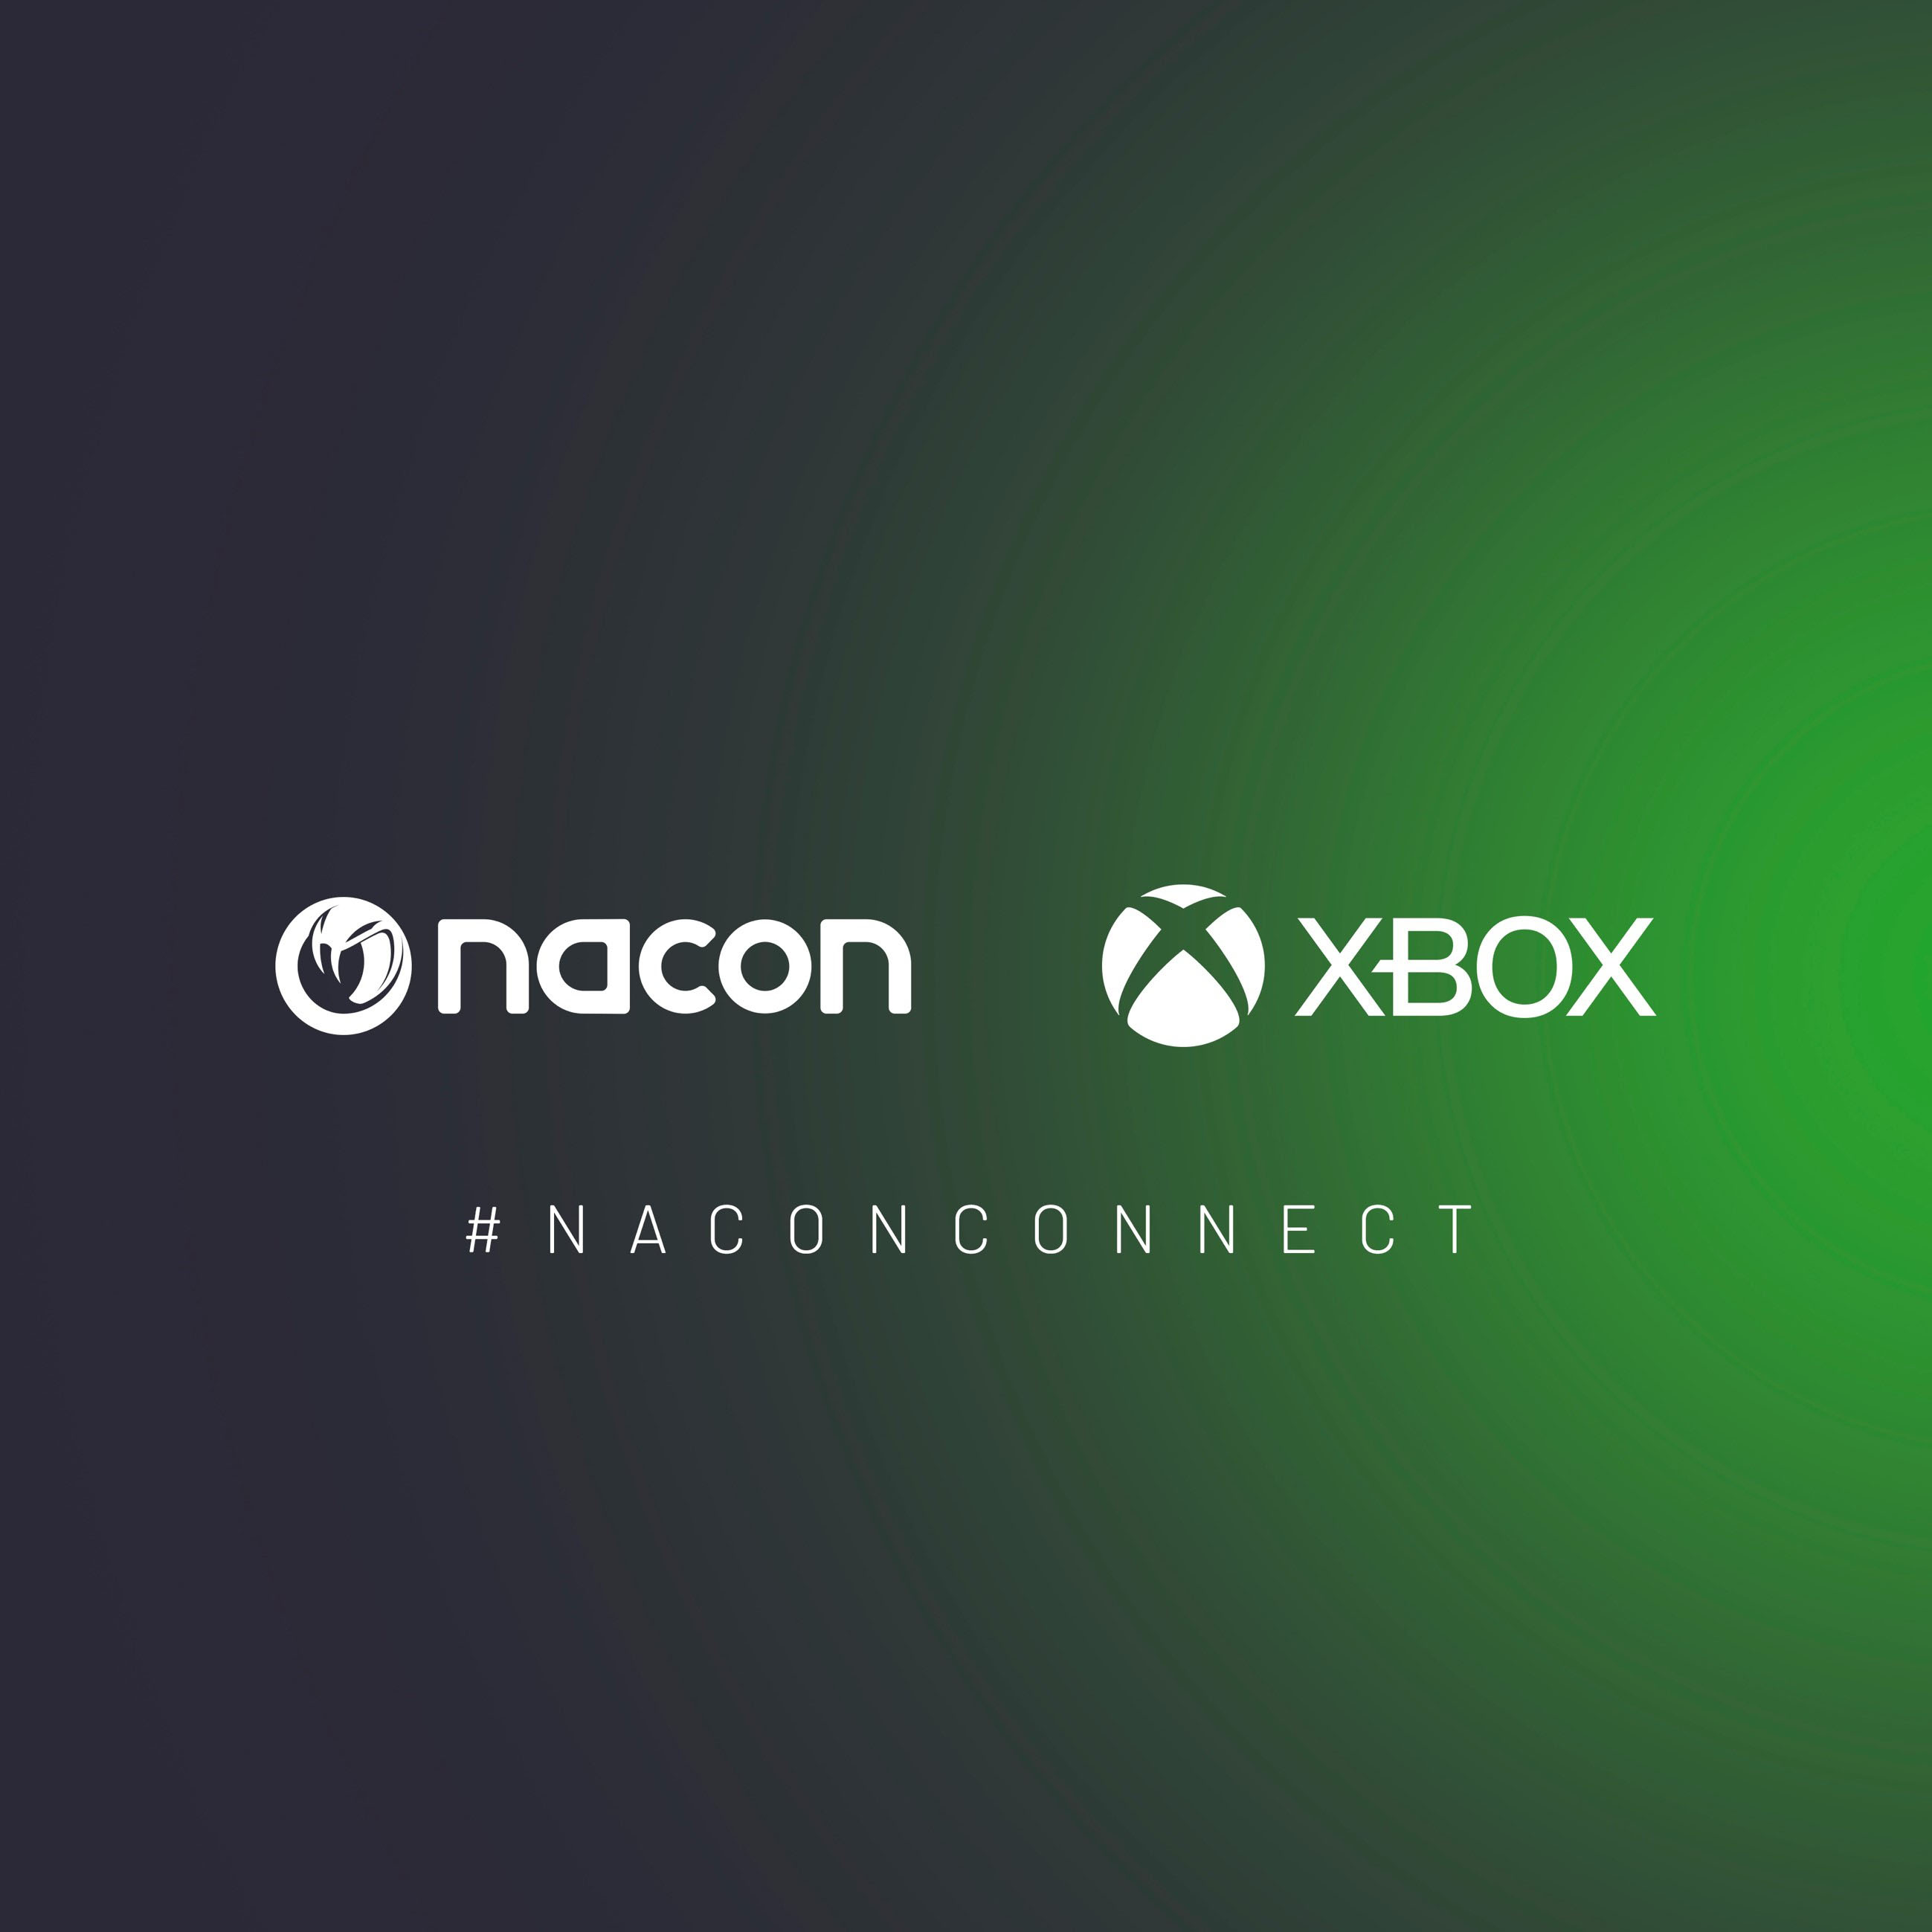 Nacon Xbox